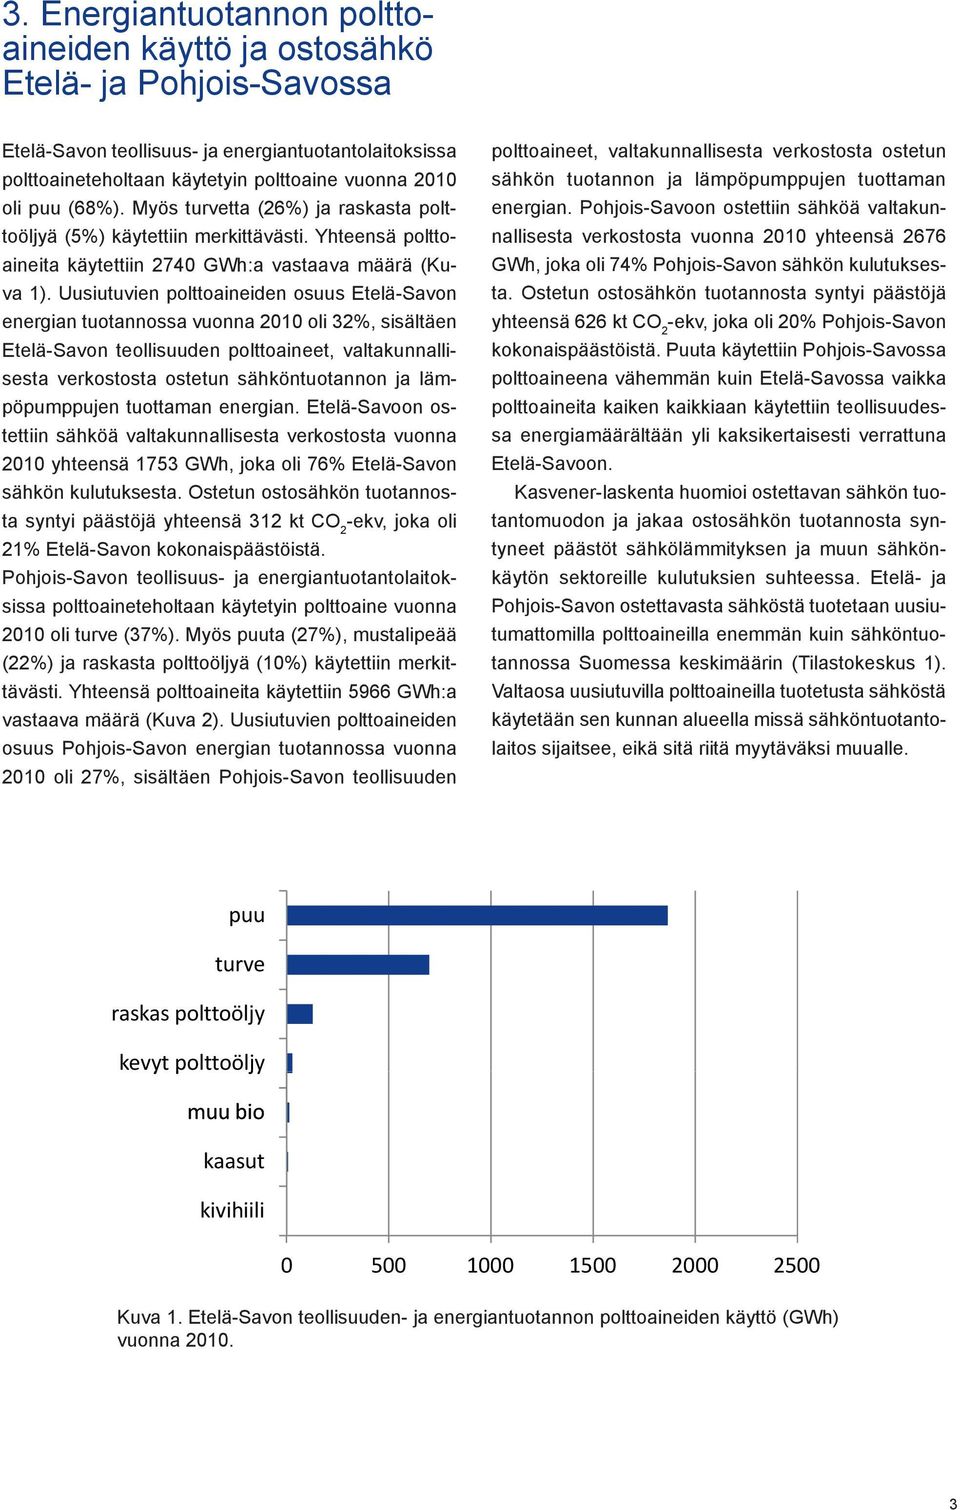 Uusiutuvien polttoaineiden osuus Etelä-Savon energian tuotannossa vuonna 2010 oli 32%, sisältäen Etelä-Savon teollisuuden polttoaineet, valtakunnallisesta verkostosta ostetun sähköntuotannon ja